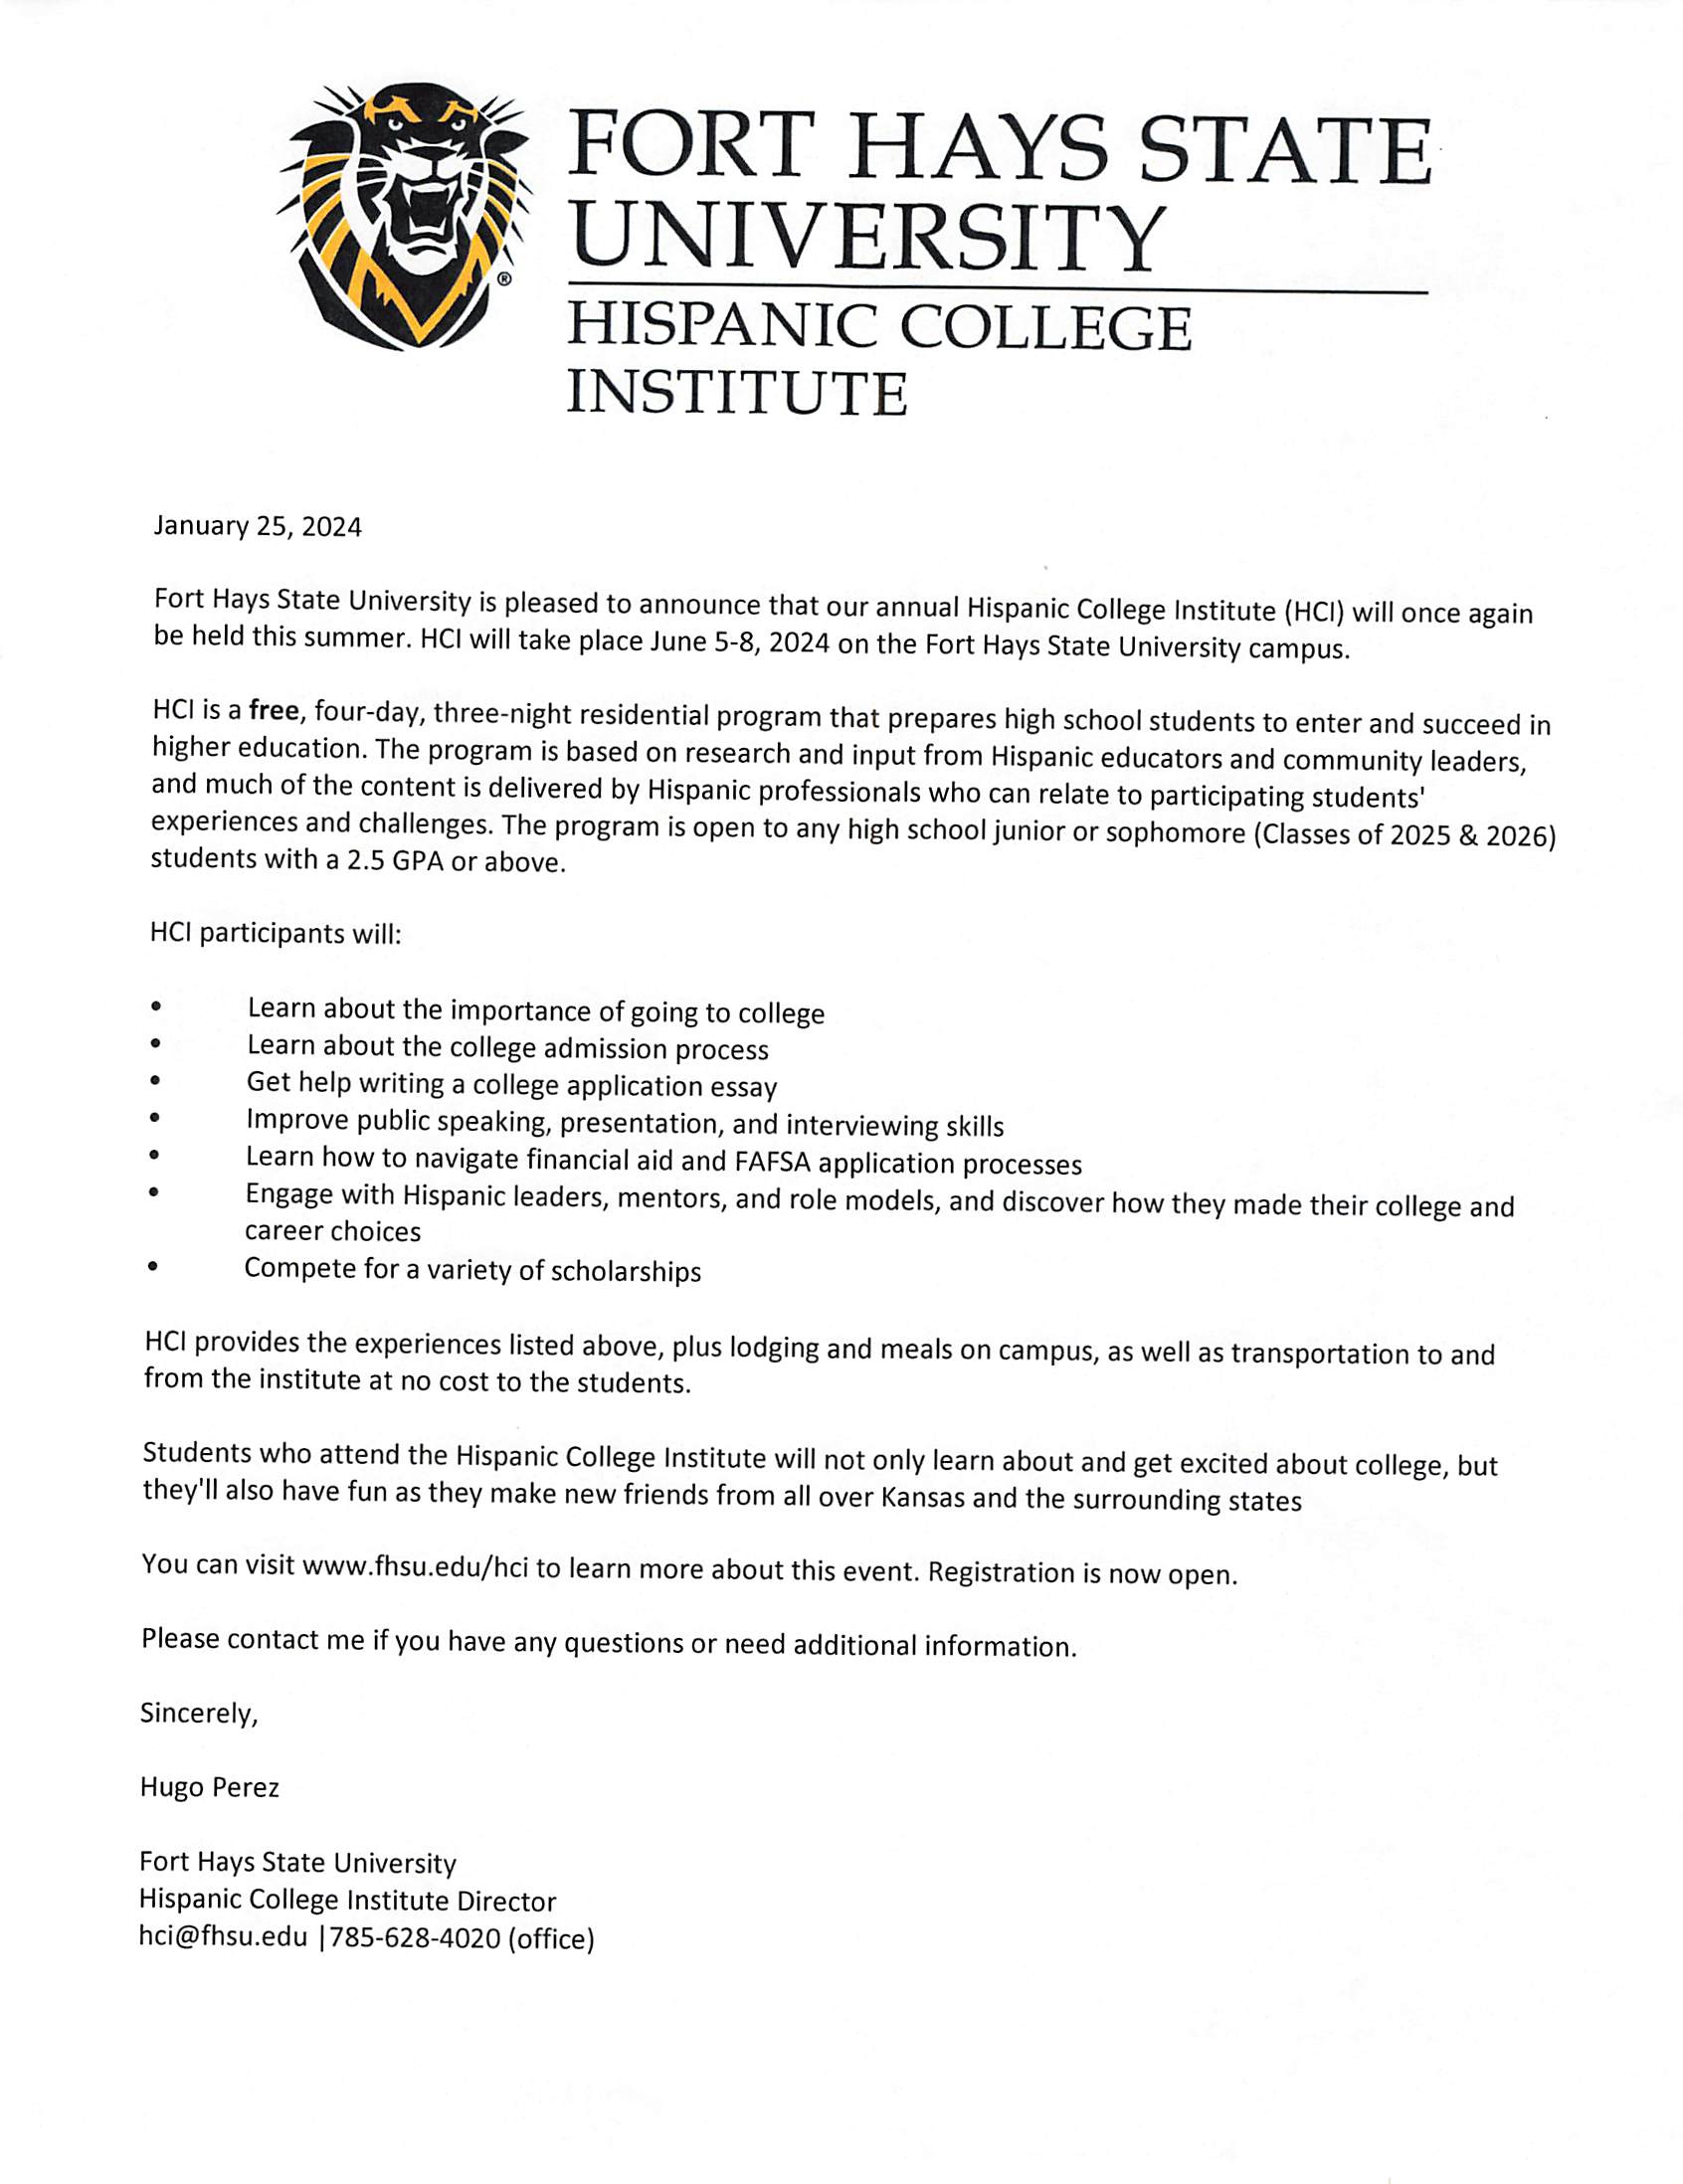 Fort Hays State University Hispanic College Institute (HCI)